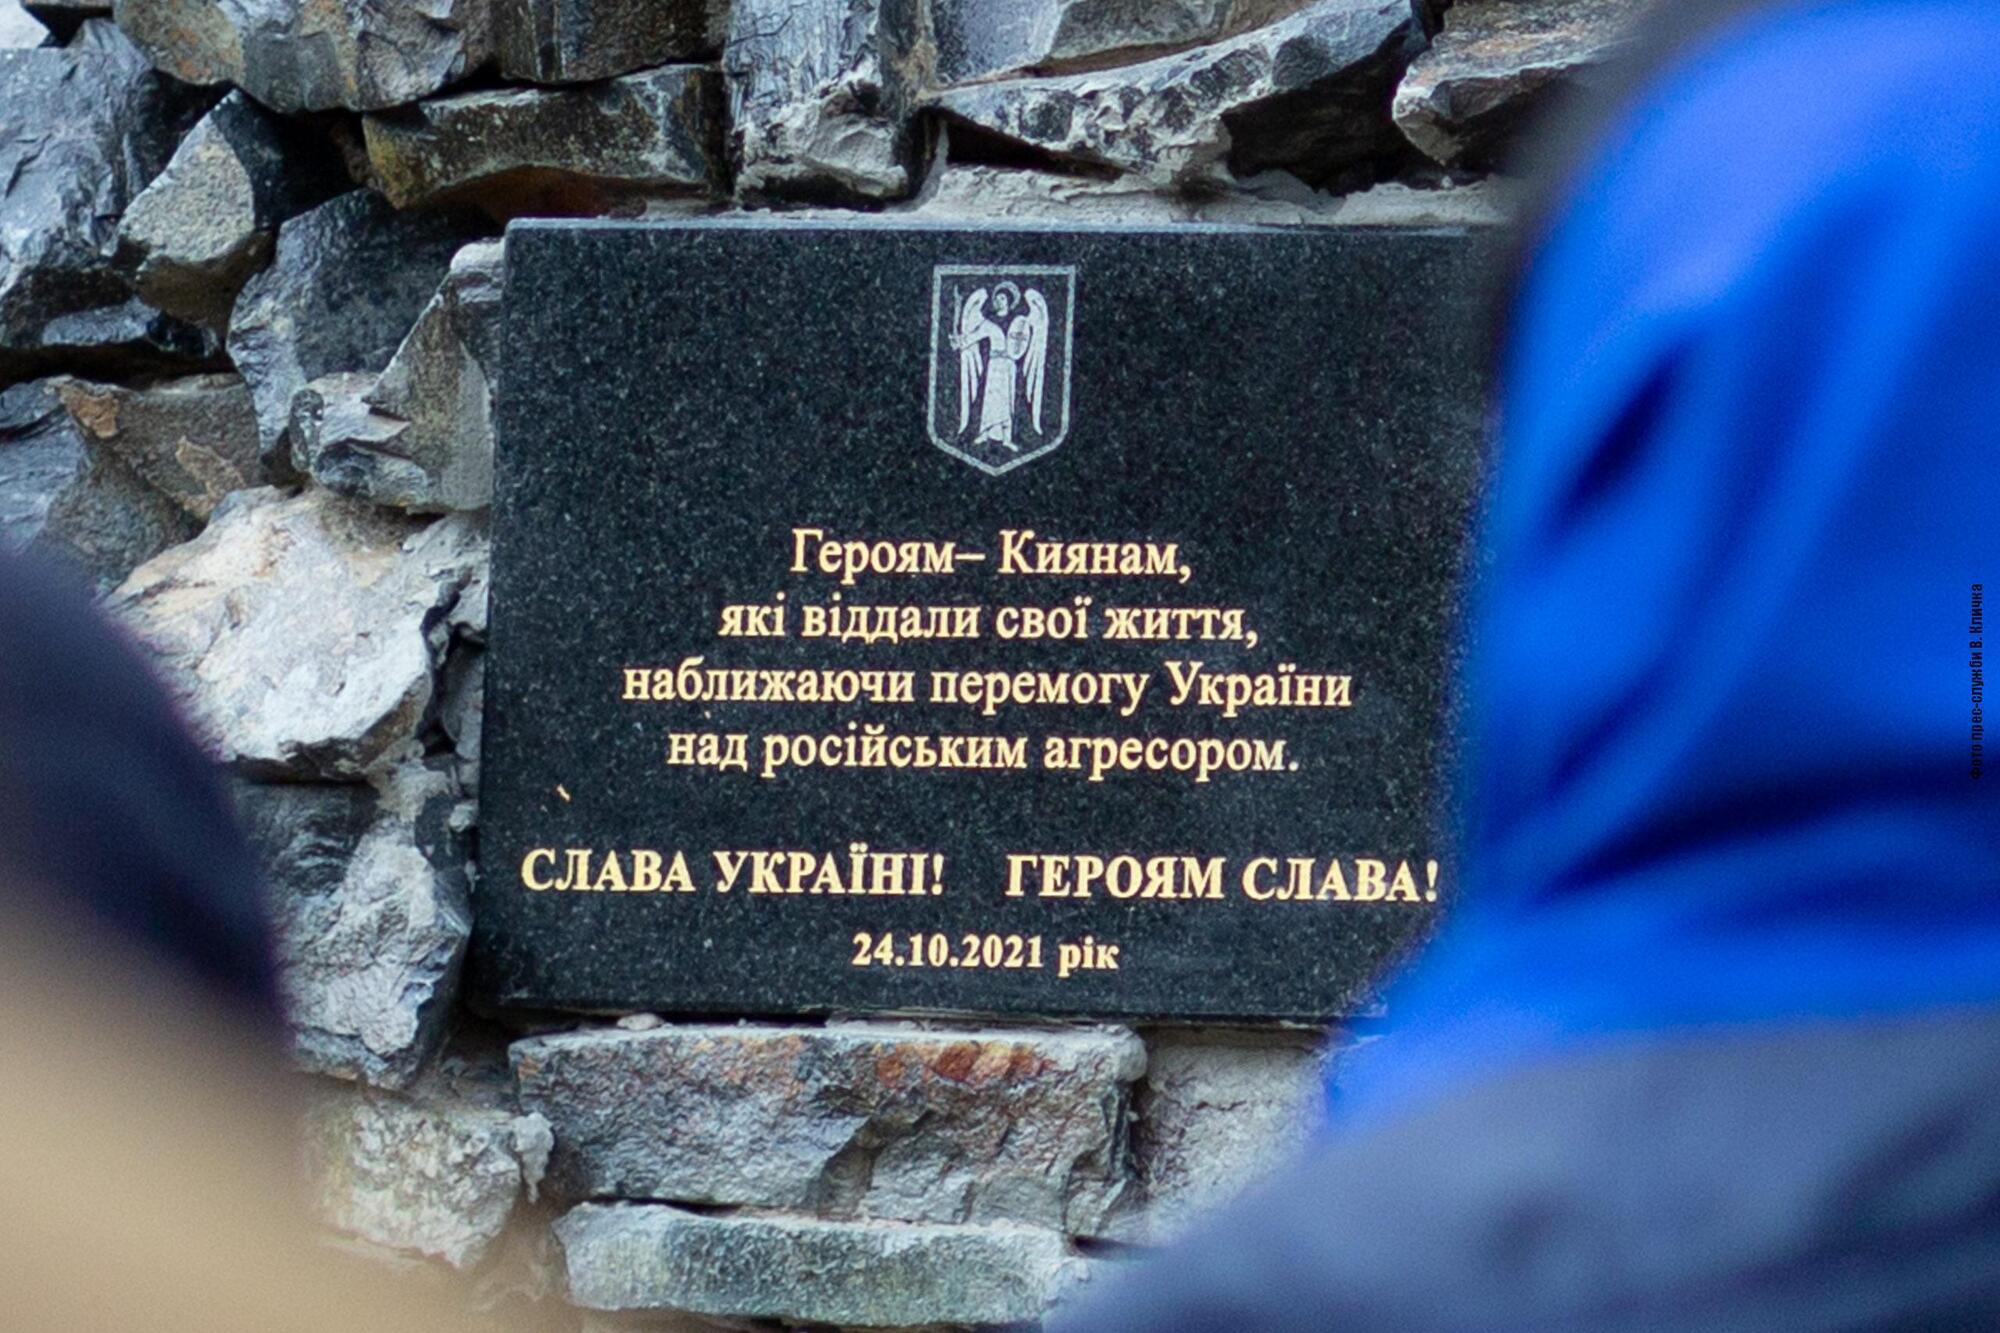 Муниципалы создали Мемориал павшим героям в противостоянии российской агрессии